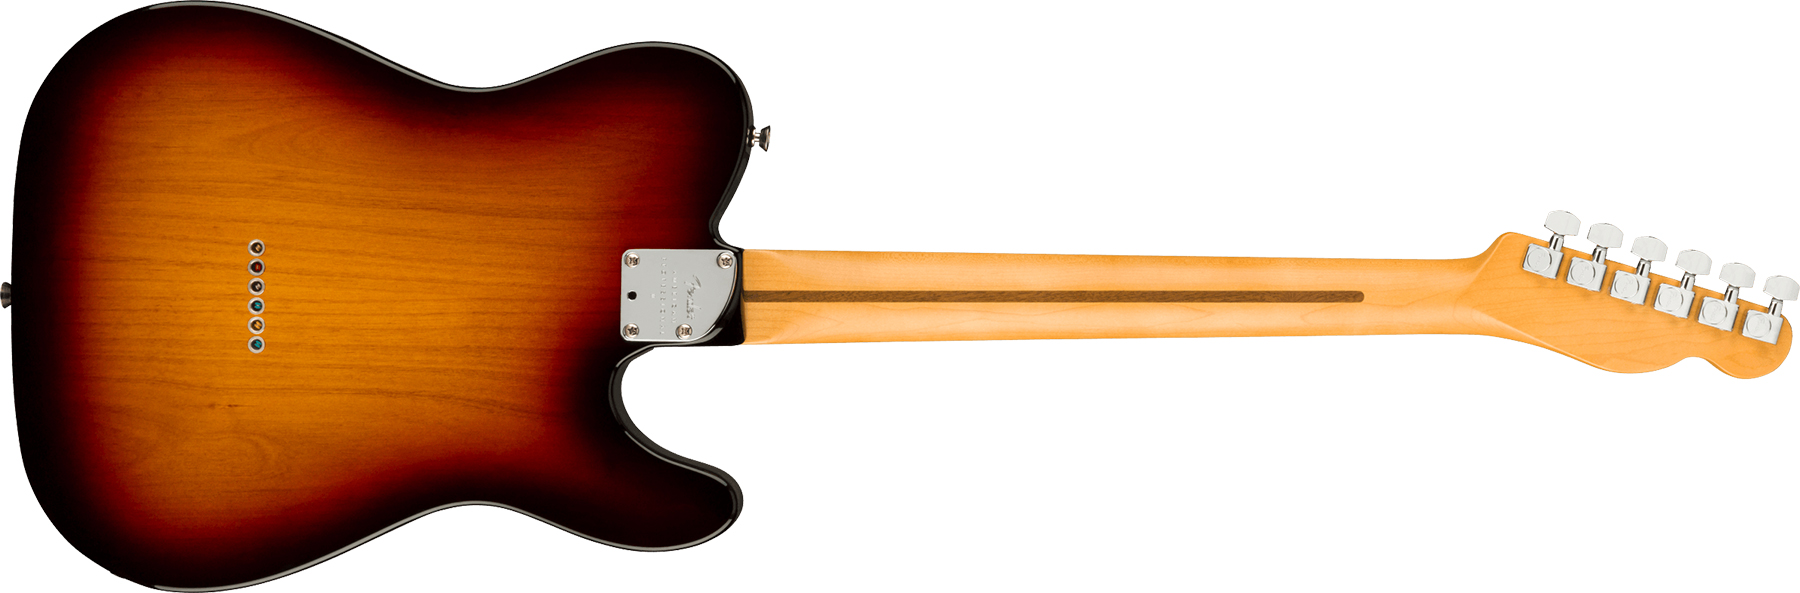 Fender Tele American Professional Ii Lh Gaucher Usa Rw - 3-color Sunburst - Linkshandige elektrische gitaar - Variation 1